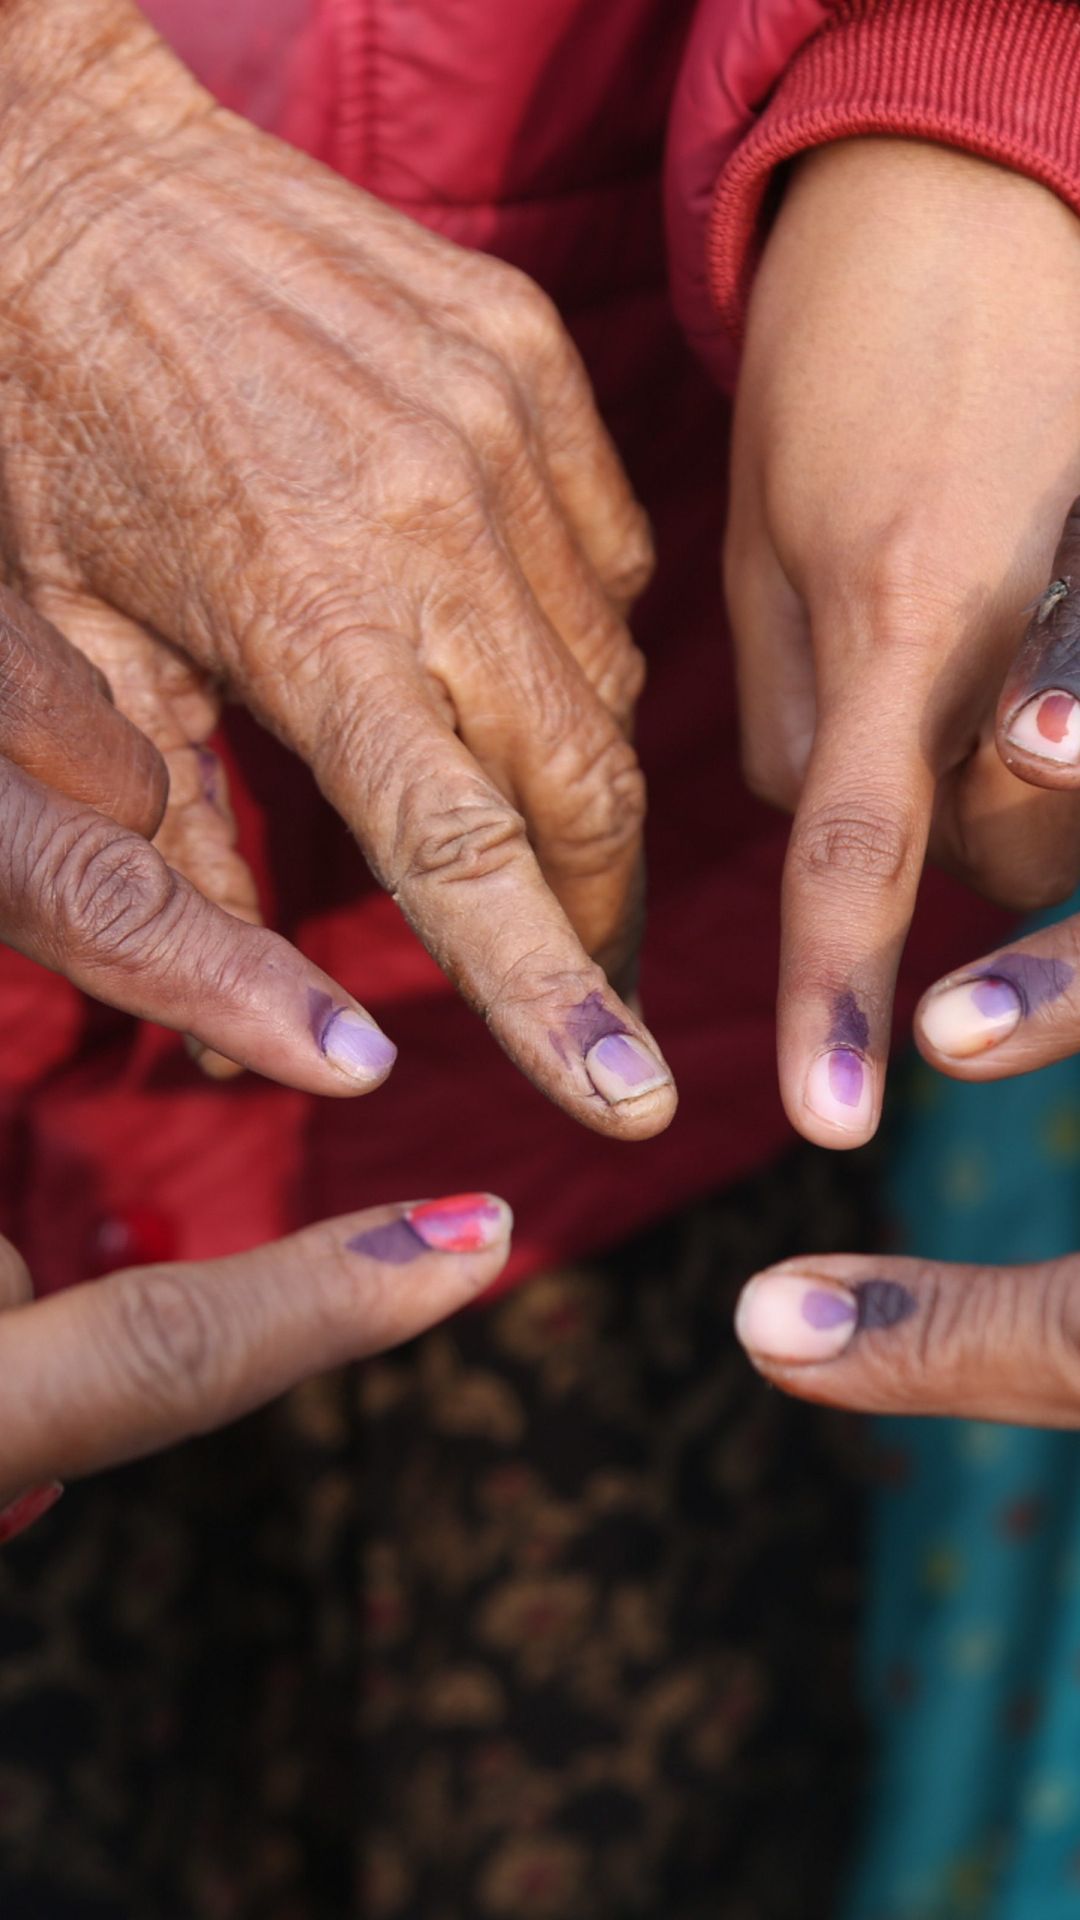 घर बैठे मतदान करने के क्या हैं नियम? चुनाव आयोग को दीजिए सुझाव